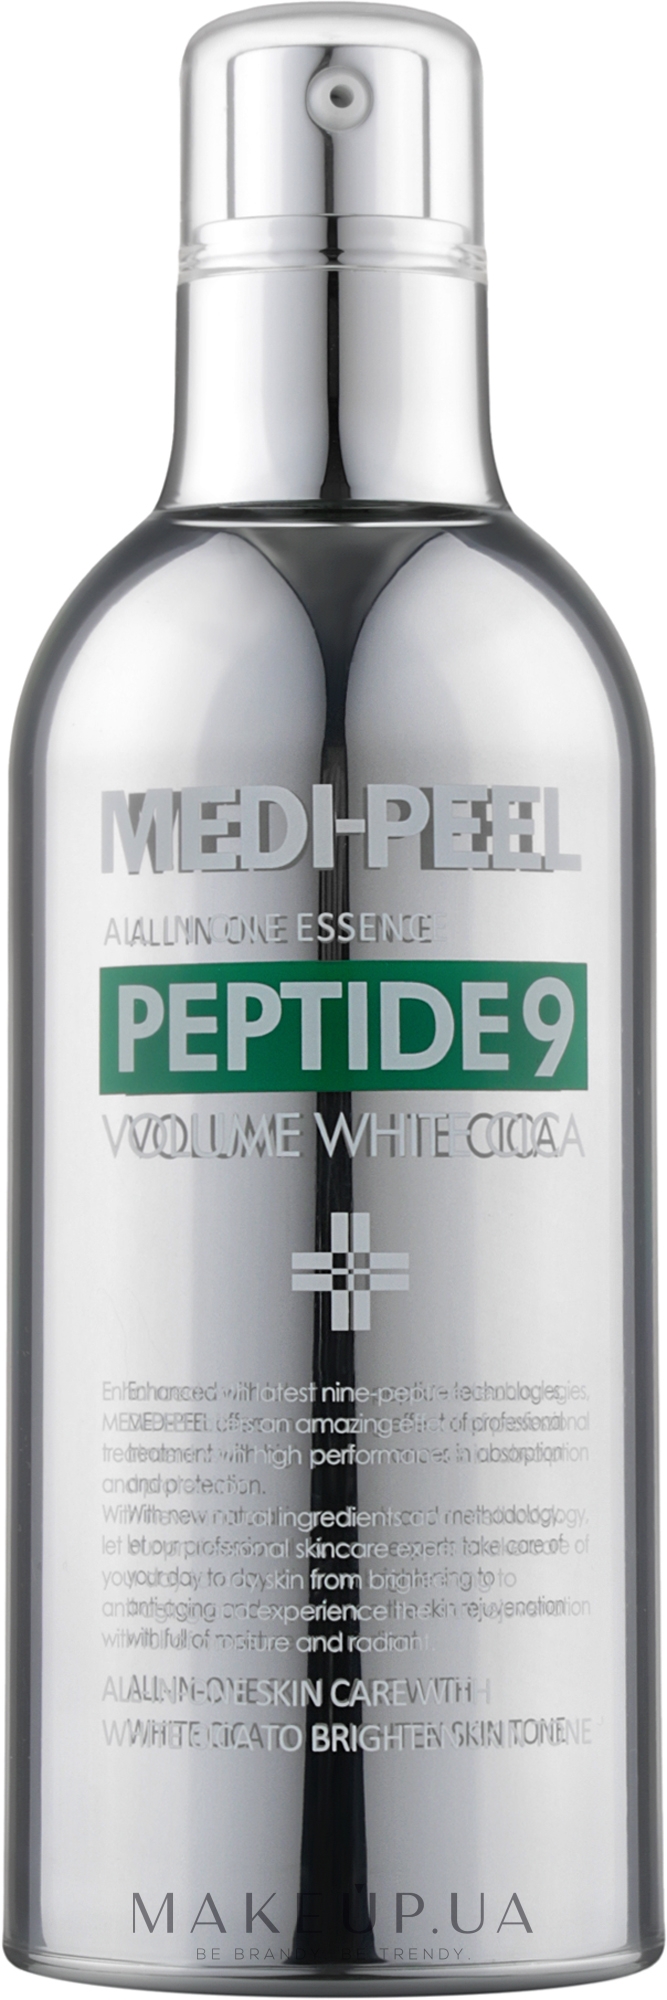 Освітлювальна киснева есенція з центелою - Medi-Peel Peptide 9 Volume White Cica Essence — фото 100ml